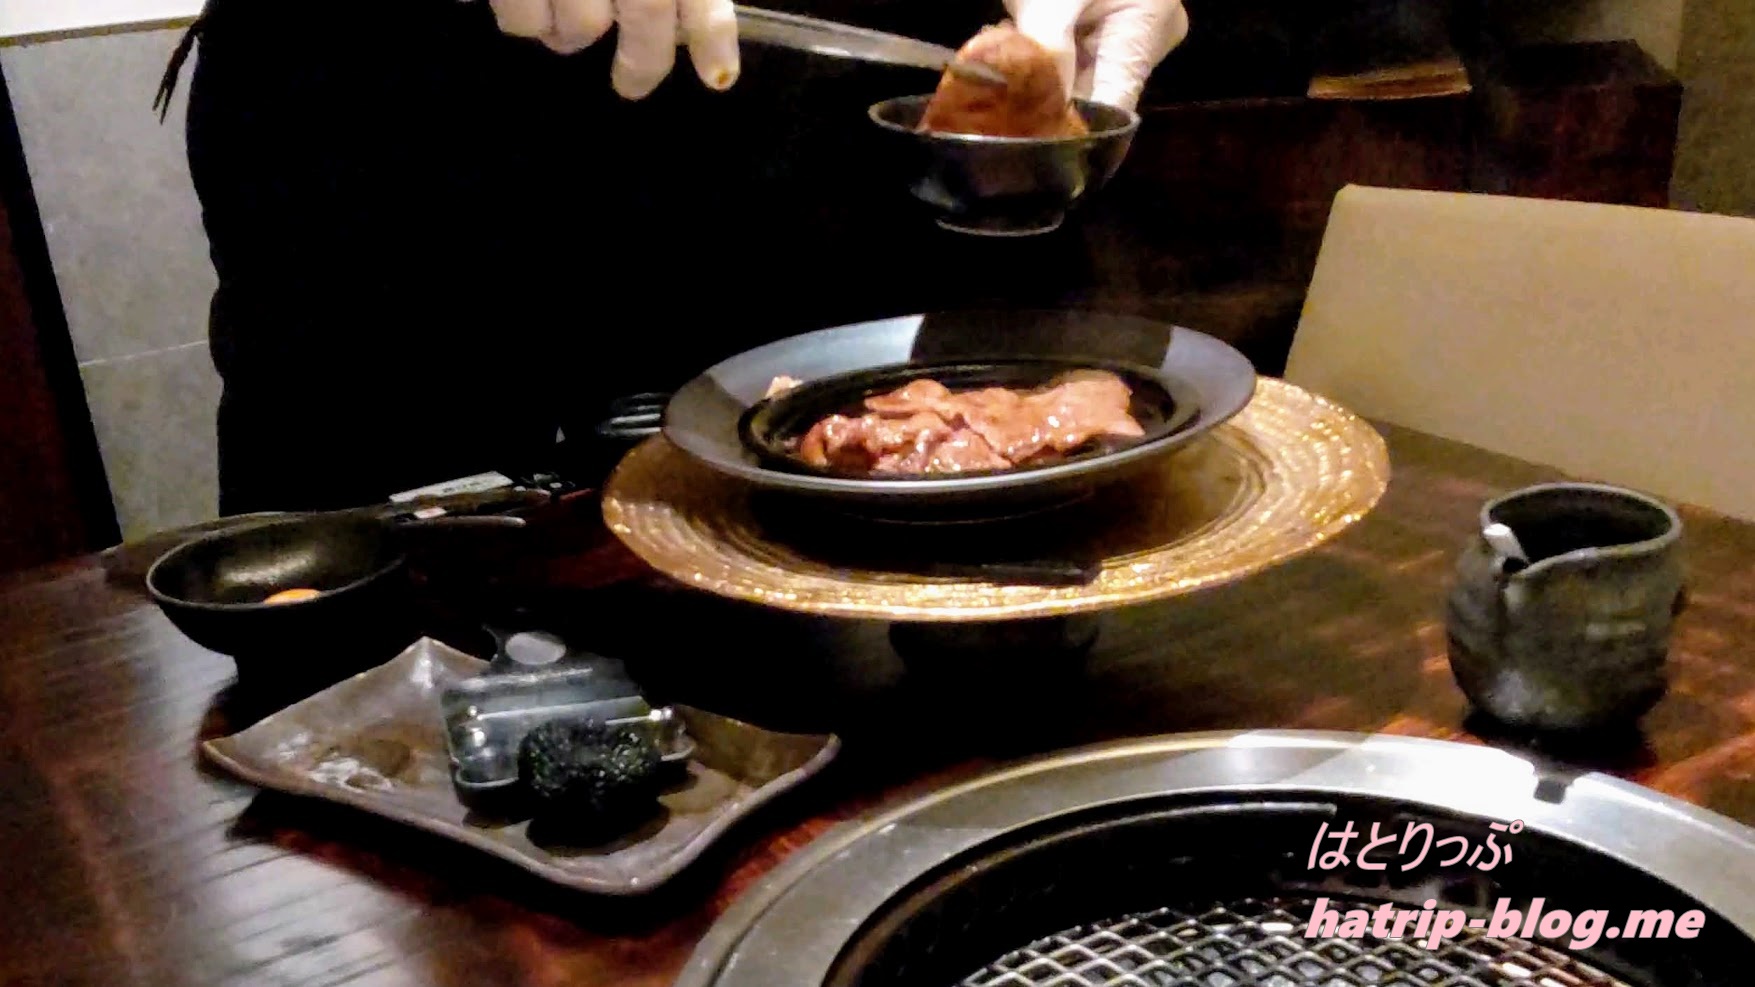 東京都中央区 焼肉 excellent エクセレント 銀座店 竹コース 銘柄牛ミスジのすき焼き 黒トリュフと共に